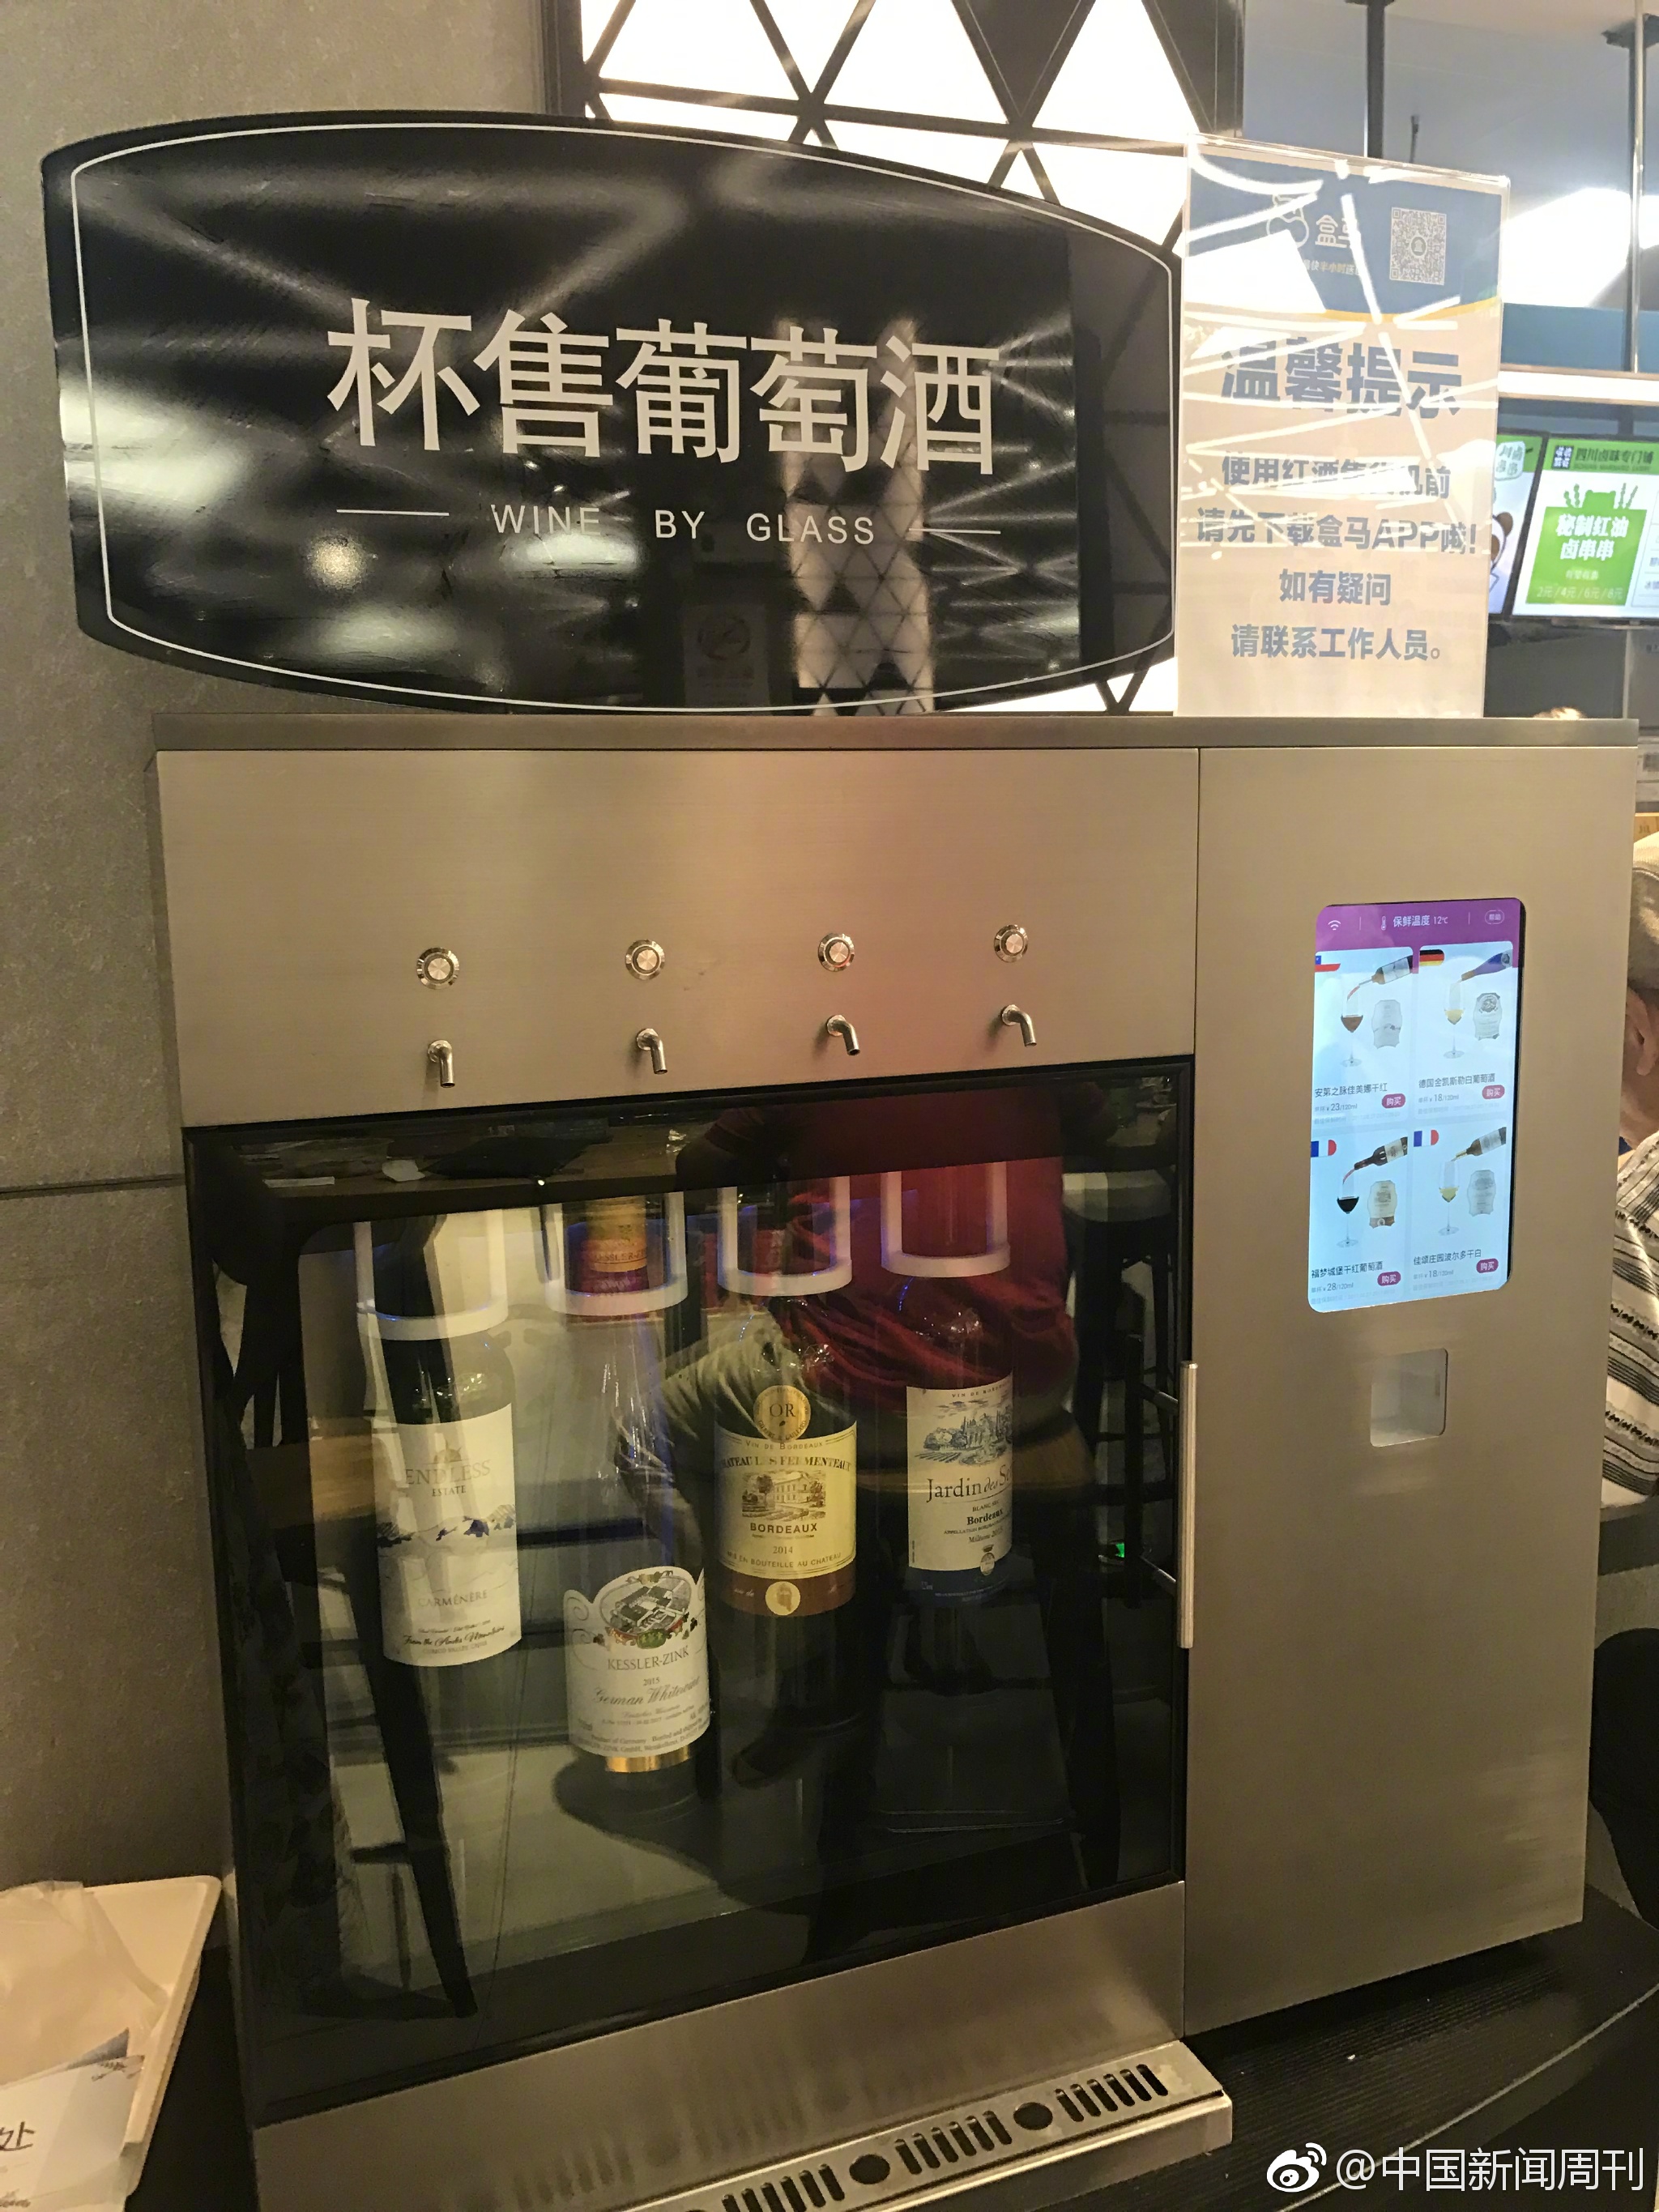 上海盒马鲜生店惊现共享红酒